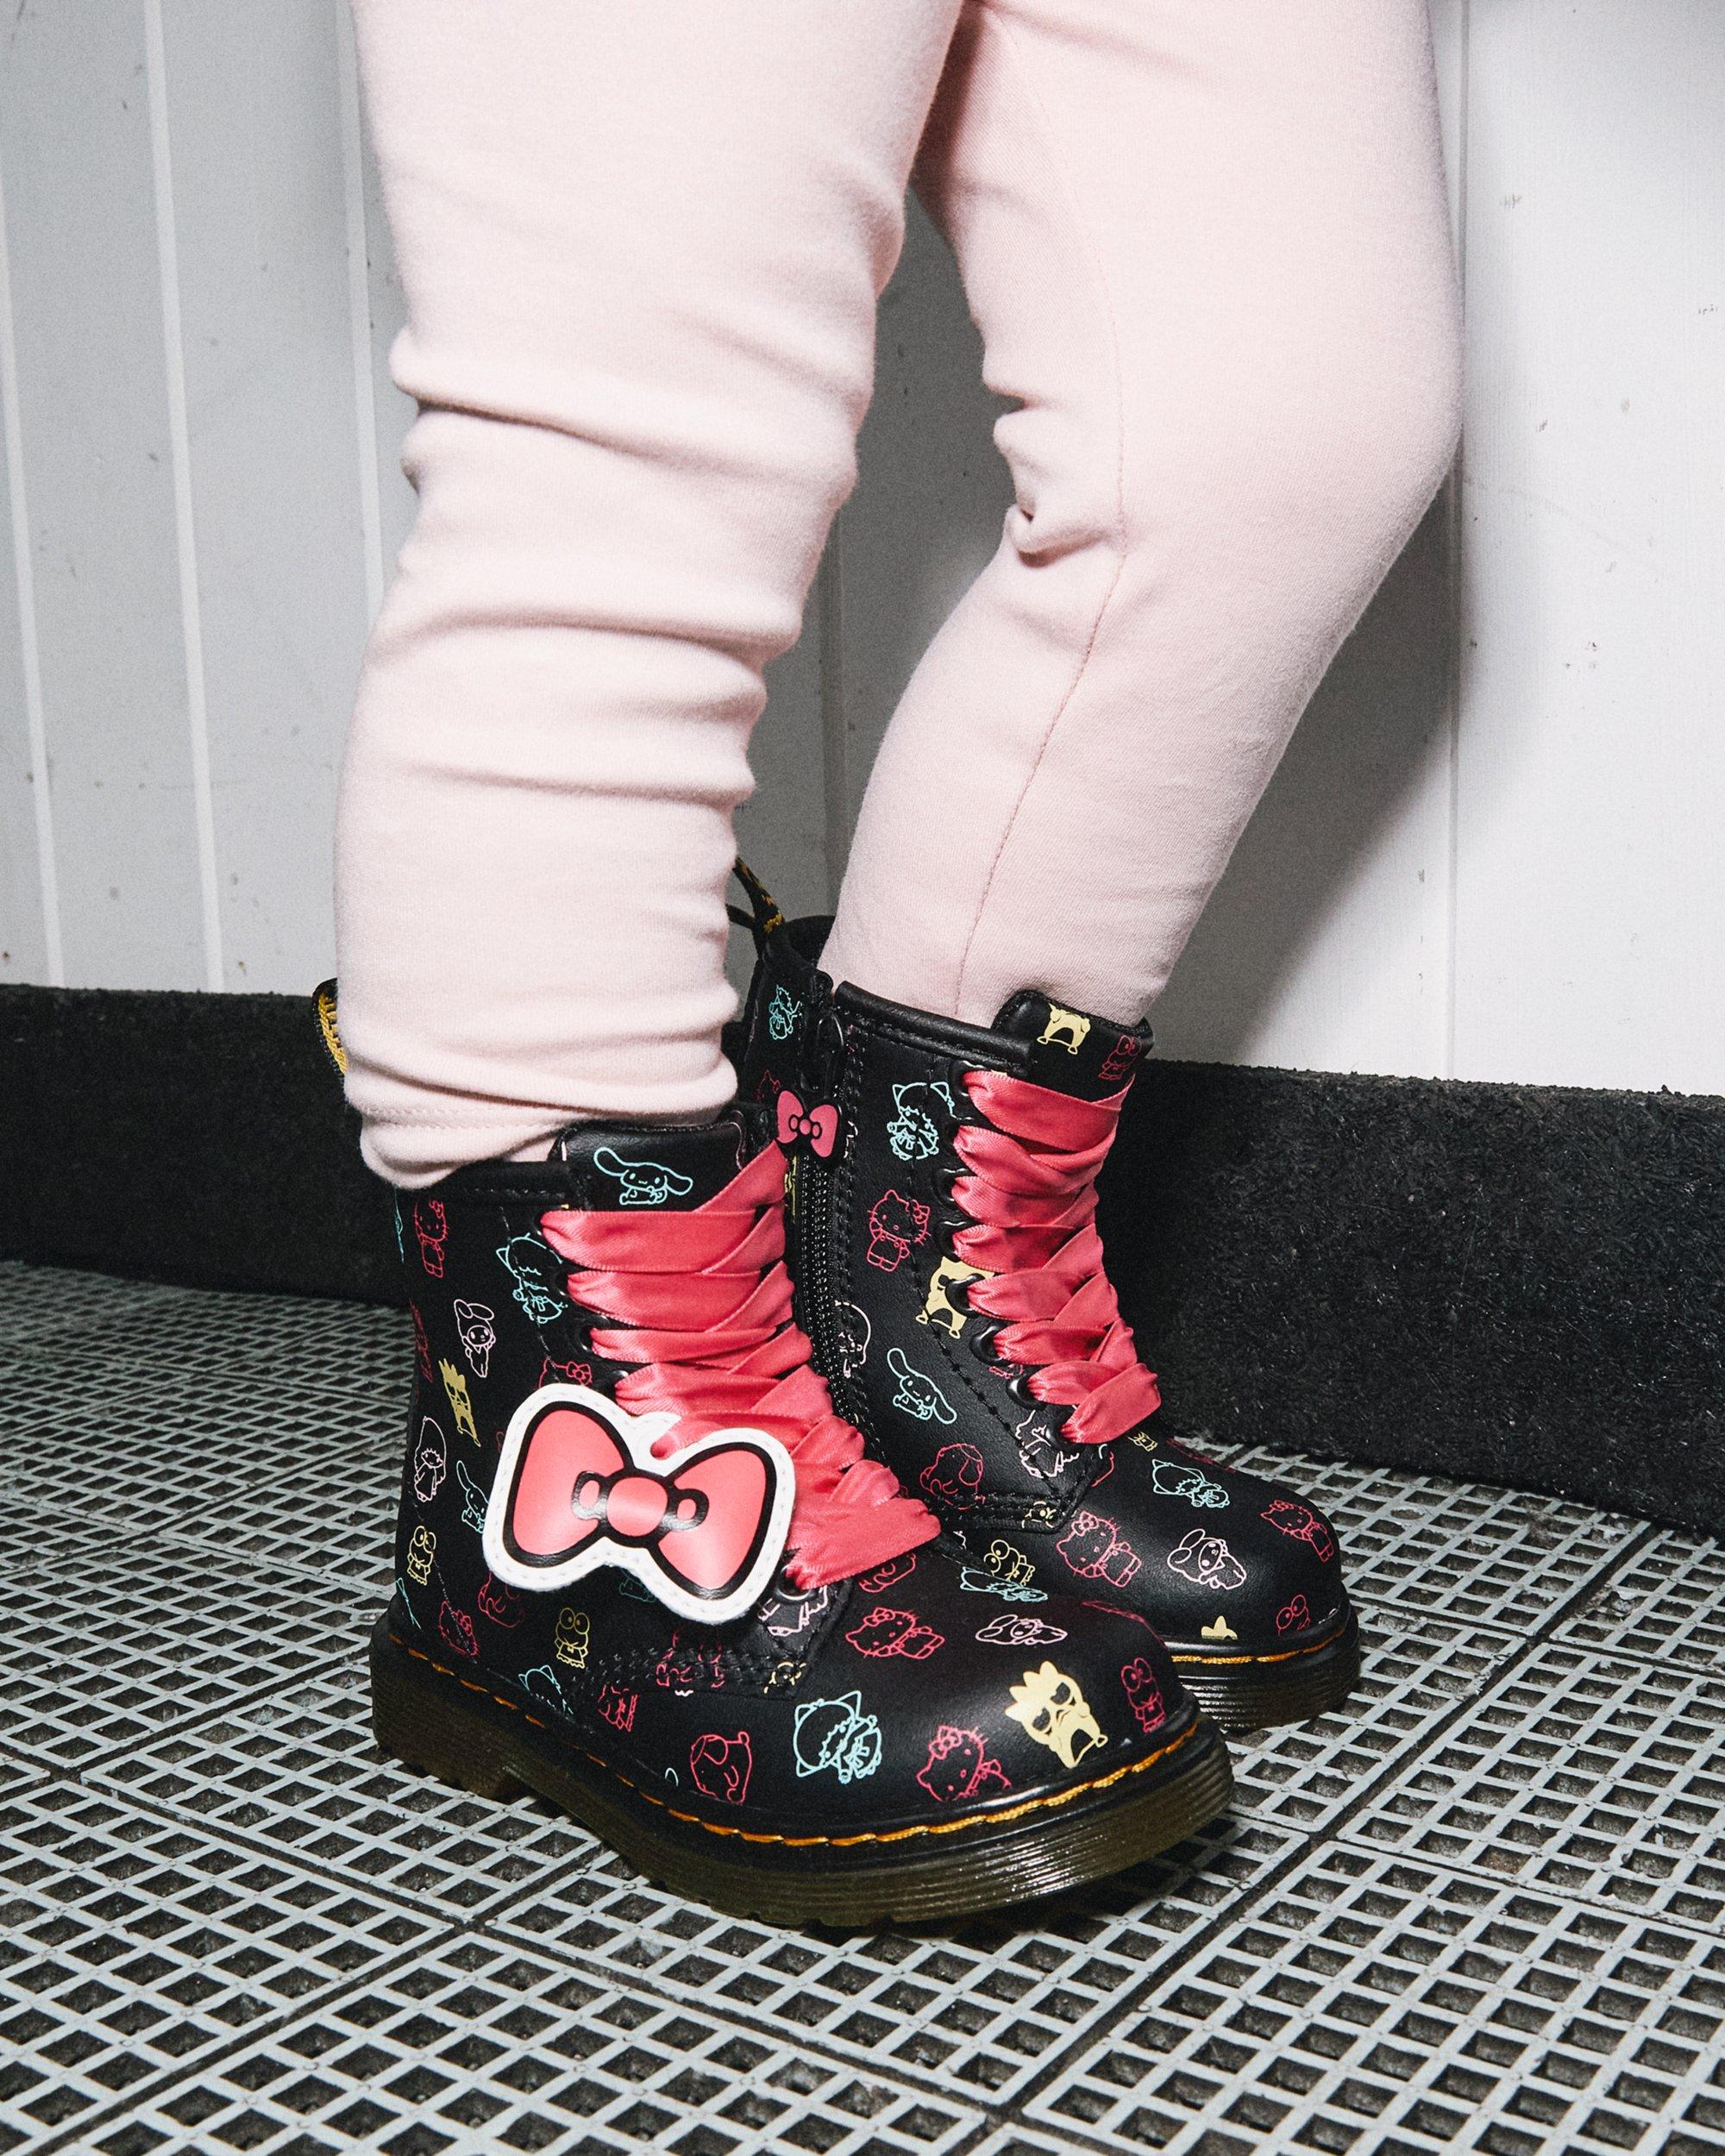 Boots 1460 Hello Kitty & Friends en Cuir pour Tout-Petit  in Noir+Multi